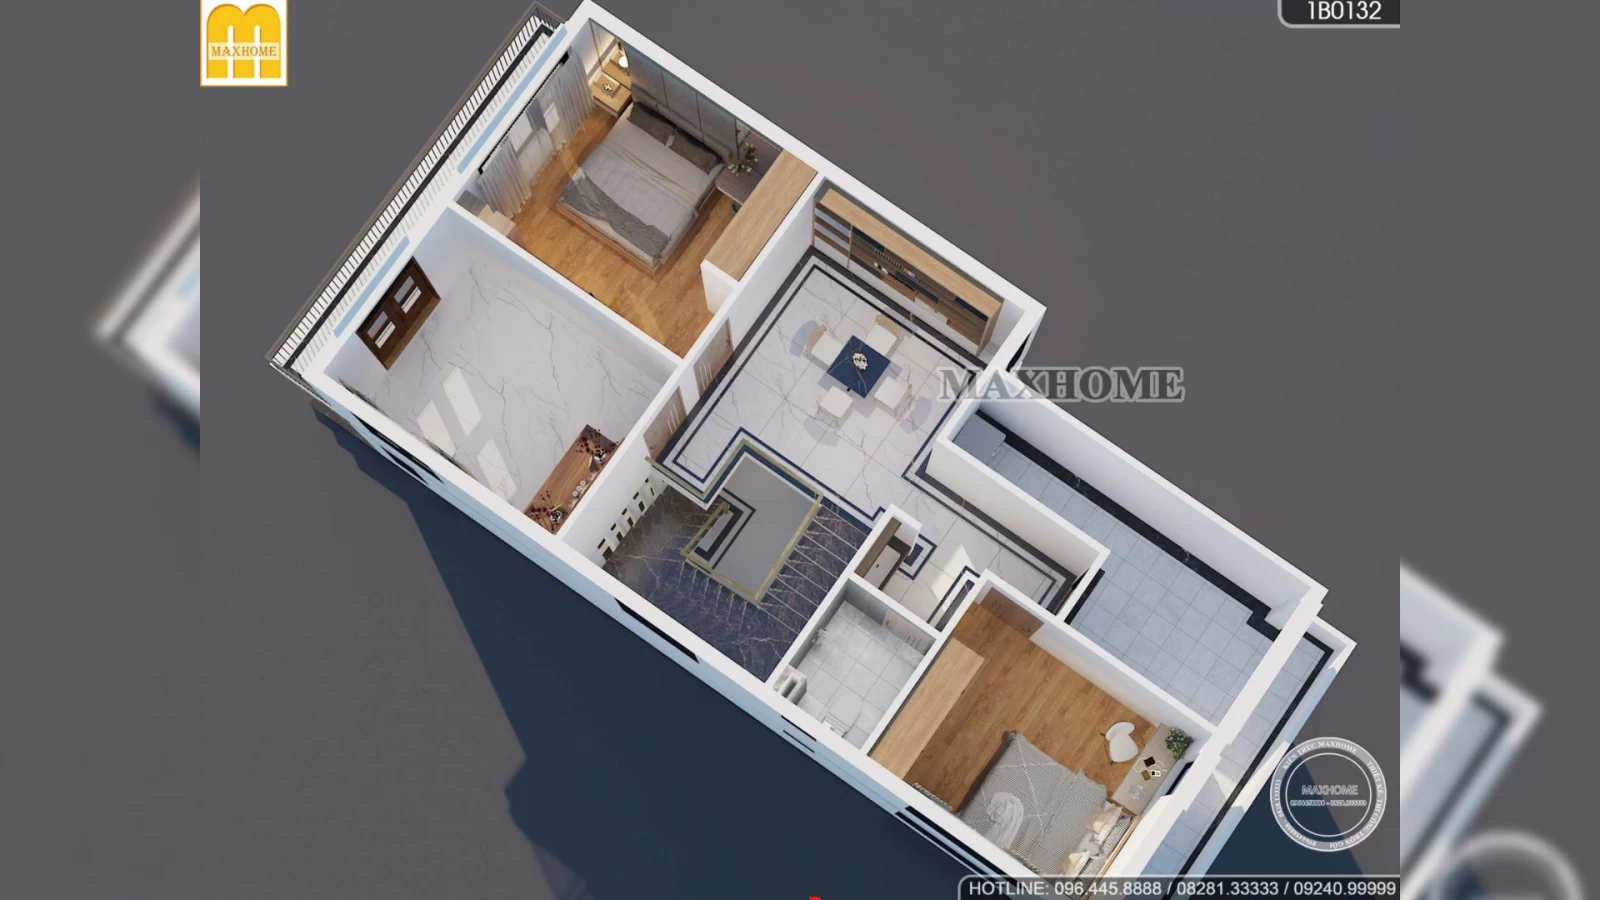 Mẫu nhà hiện đại 2 tầng với 3 phòng ngủ có mức chi phí giá rẻ | MH02845